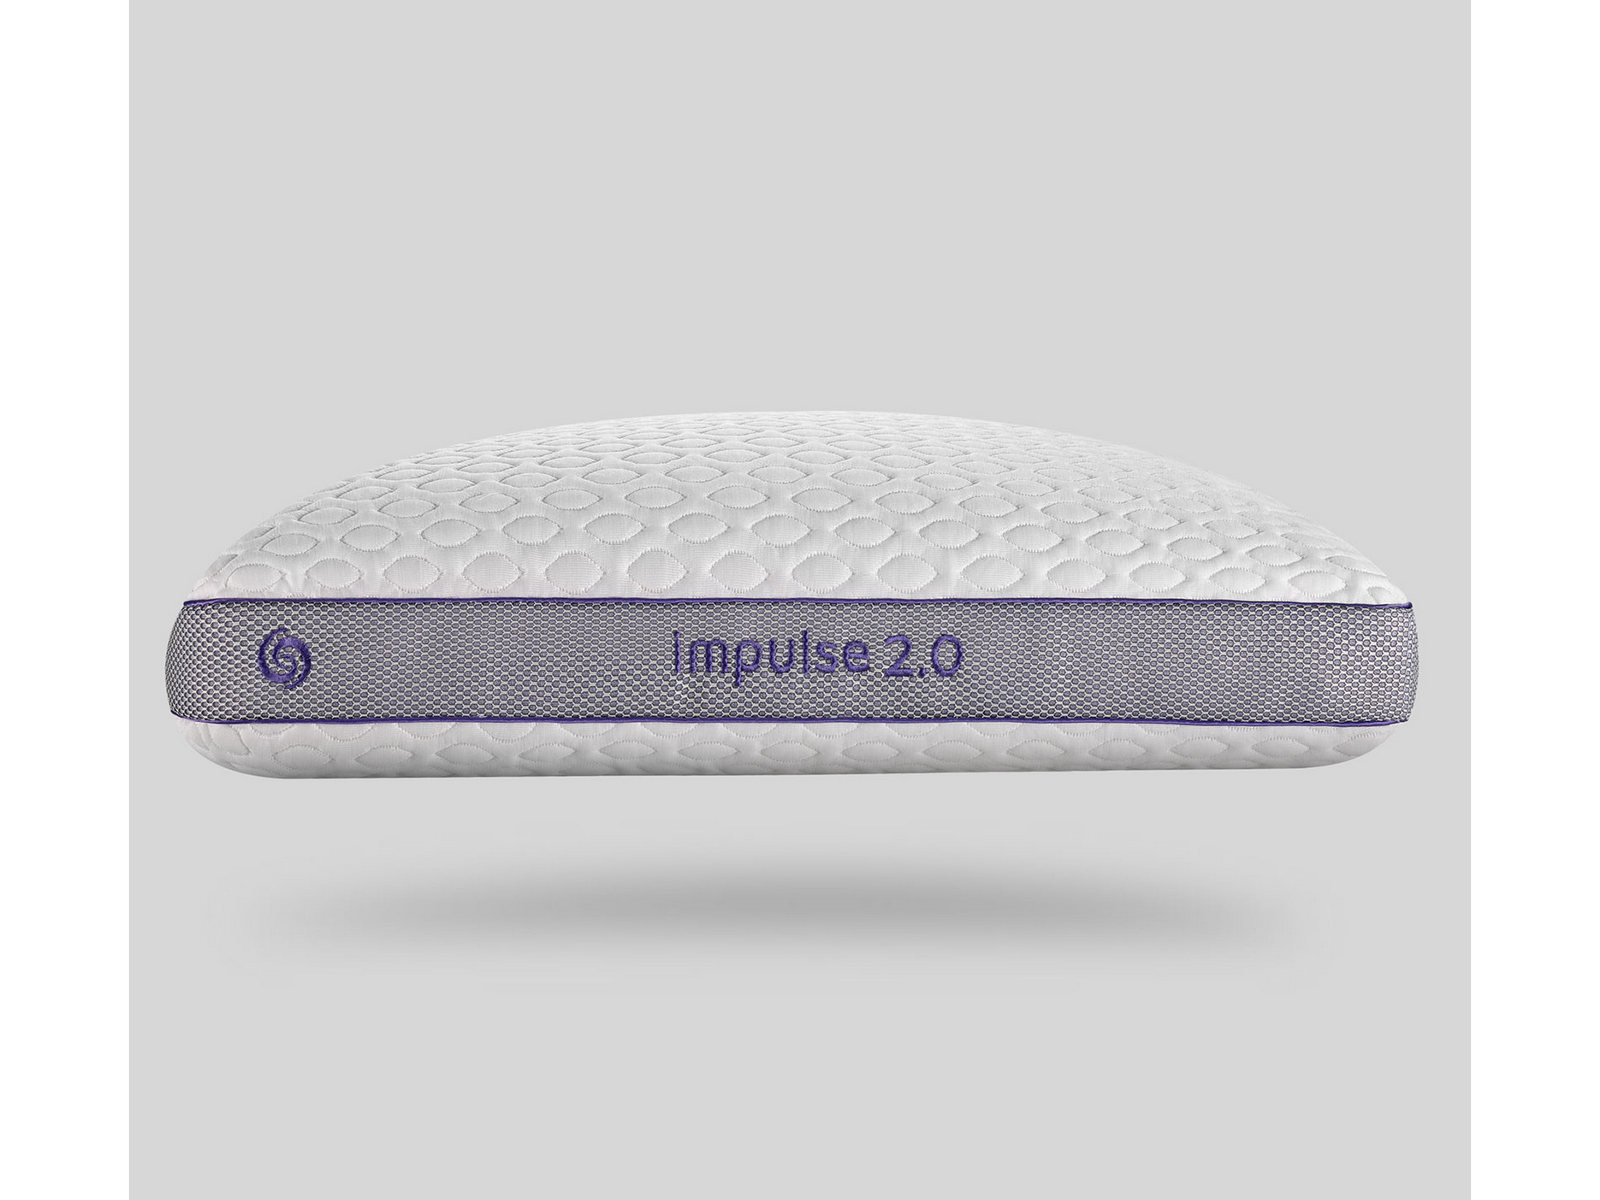 V000089010 Bedgear Impulse 2.0 Pillow sku V000089010